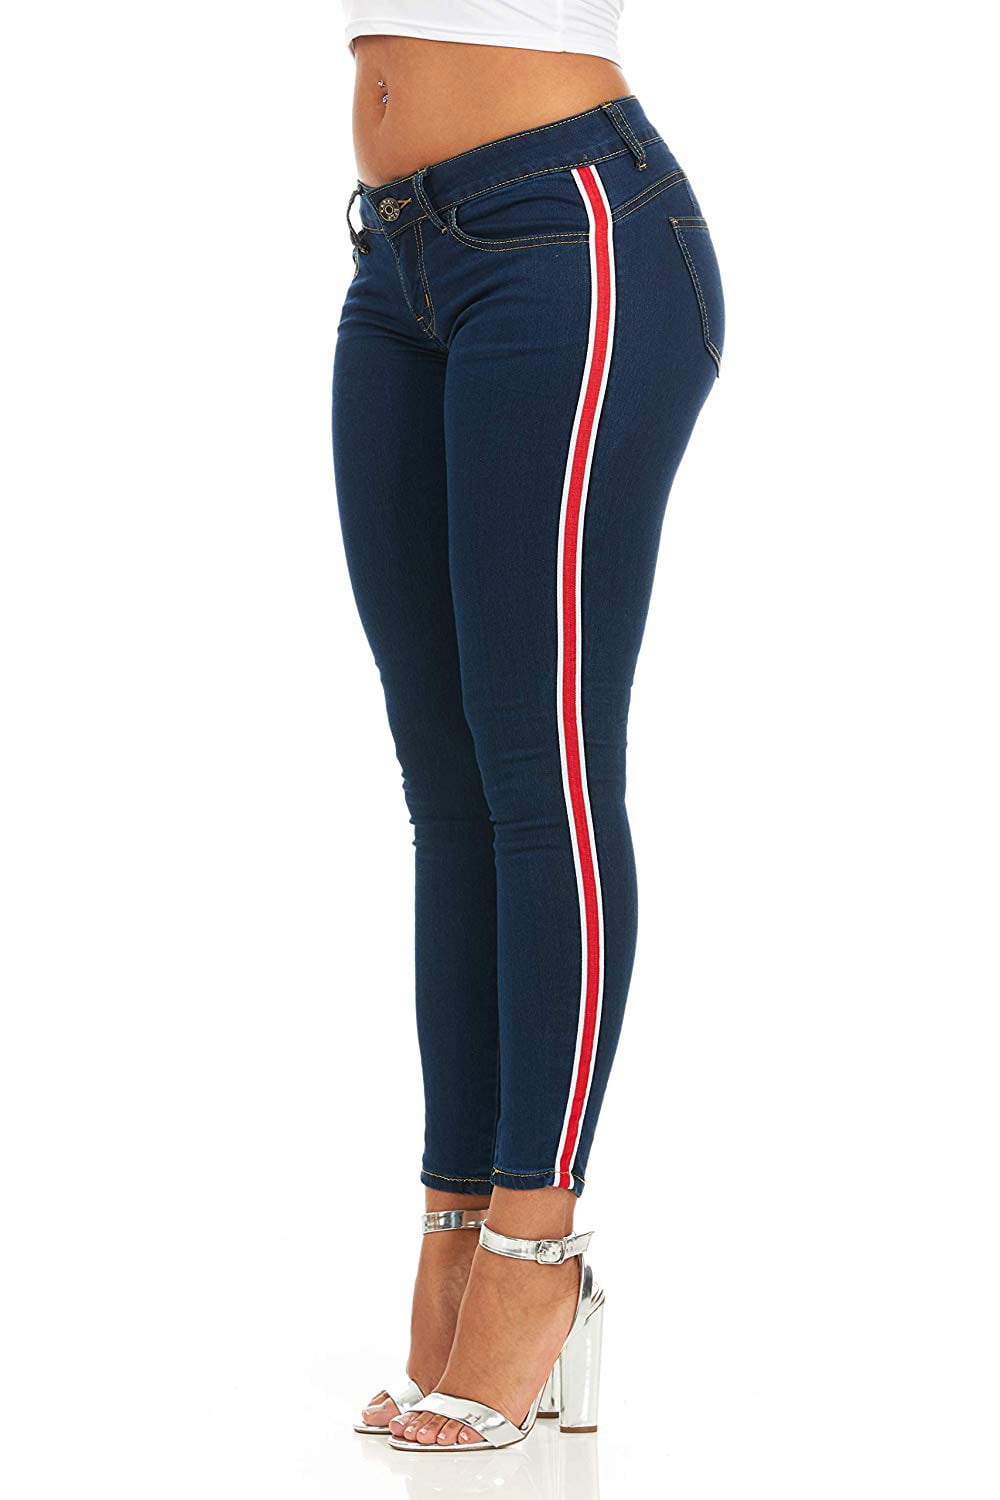 Women's Denim Side Stripe Jeggings Jeans Casual Stretch 